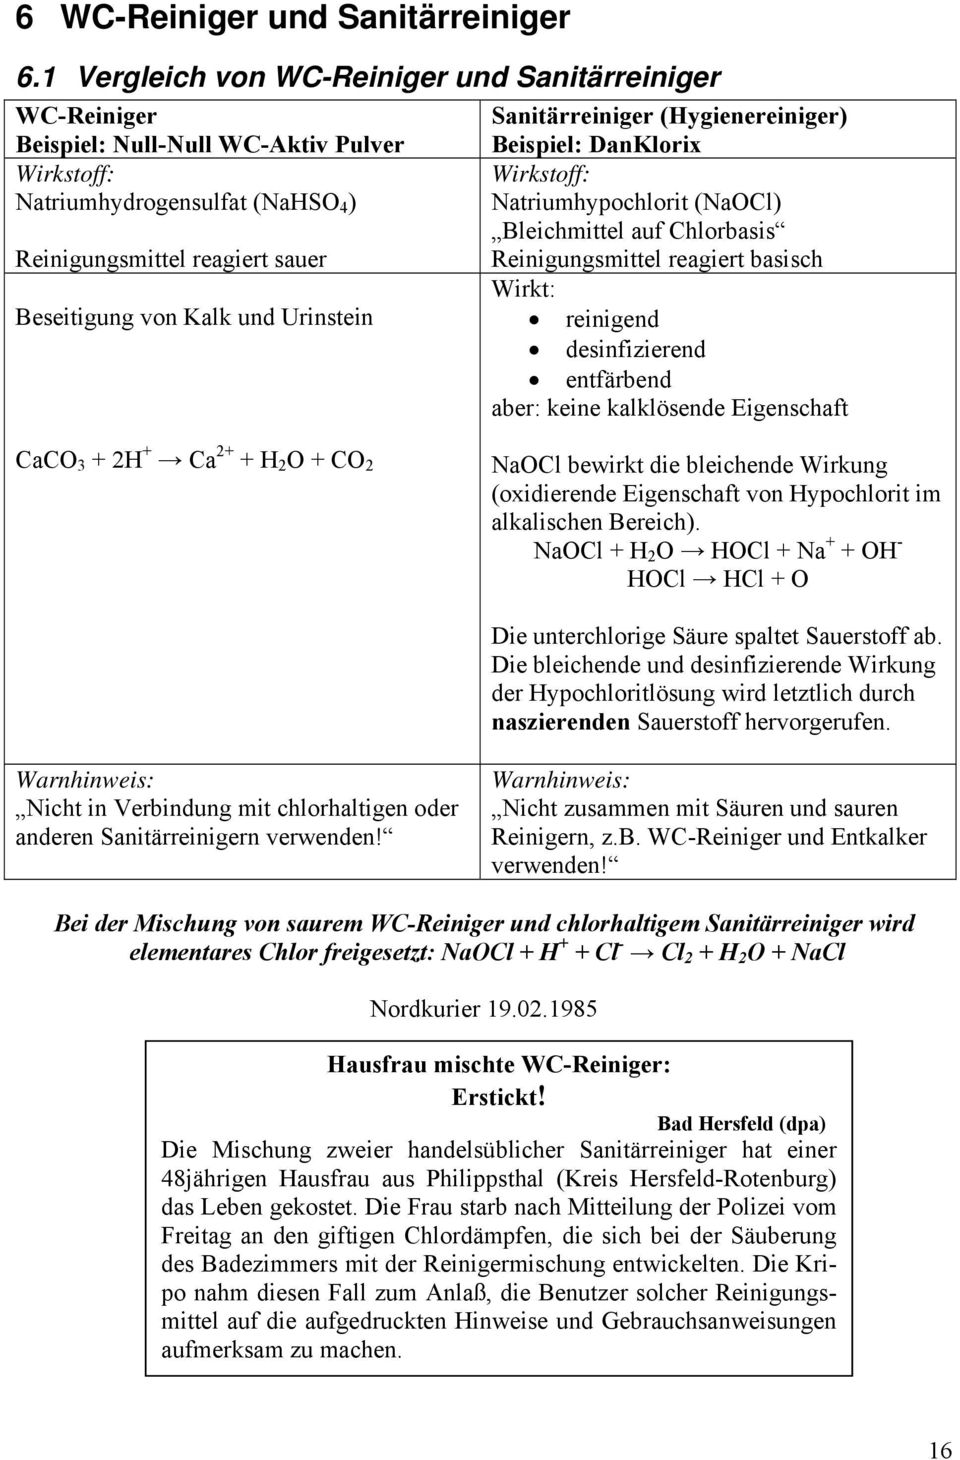 Urinstein Sanitärreiniger (Hygienereiniger) Beispiel: DanKlorix Wirkstoff: Natriumhypochlorit (NaOCl) Bleichmittel auf Chlorbasis Reinigungsmittel reagiert basisch Wirkt: reinigend desinfizierend